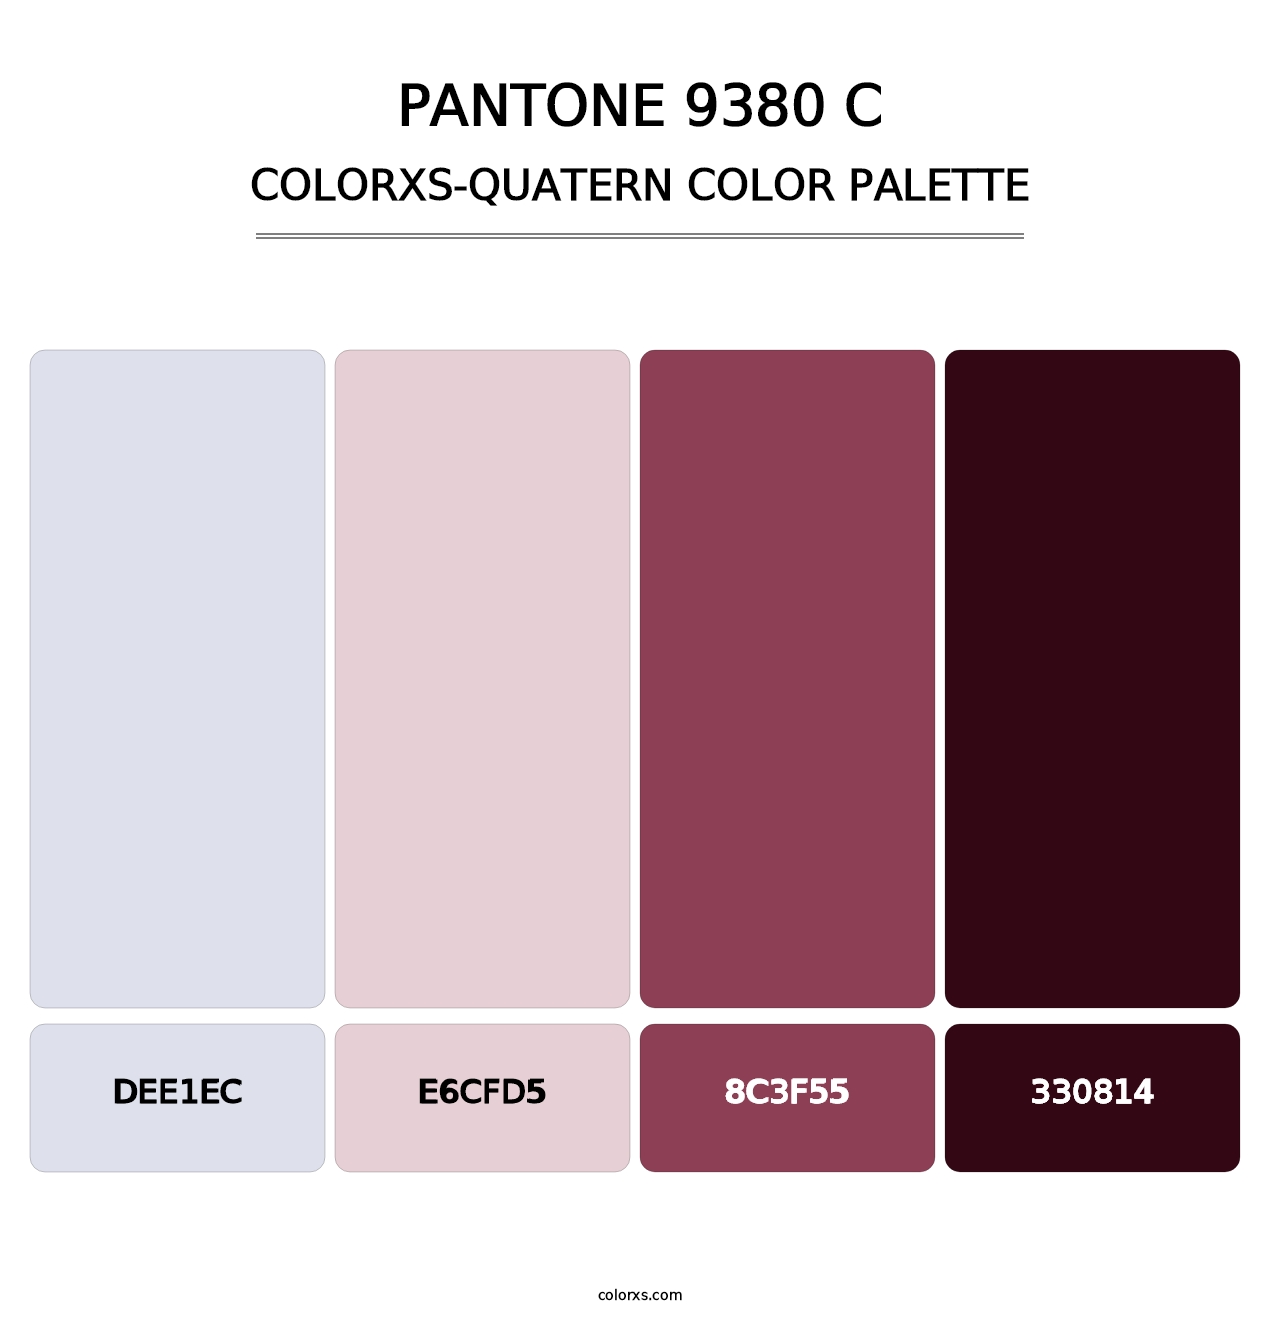 PANTONE 9380 C - Colorxs Quatern Palette